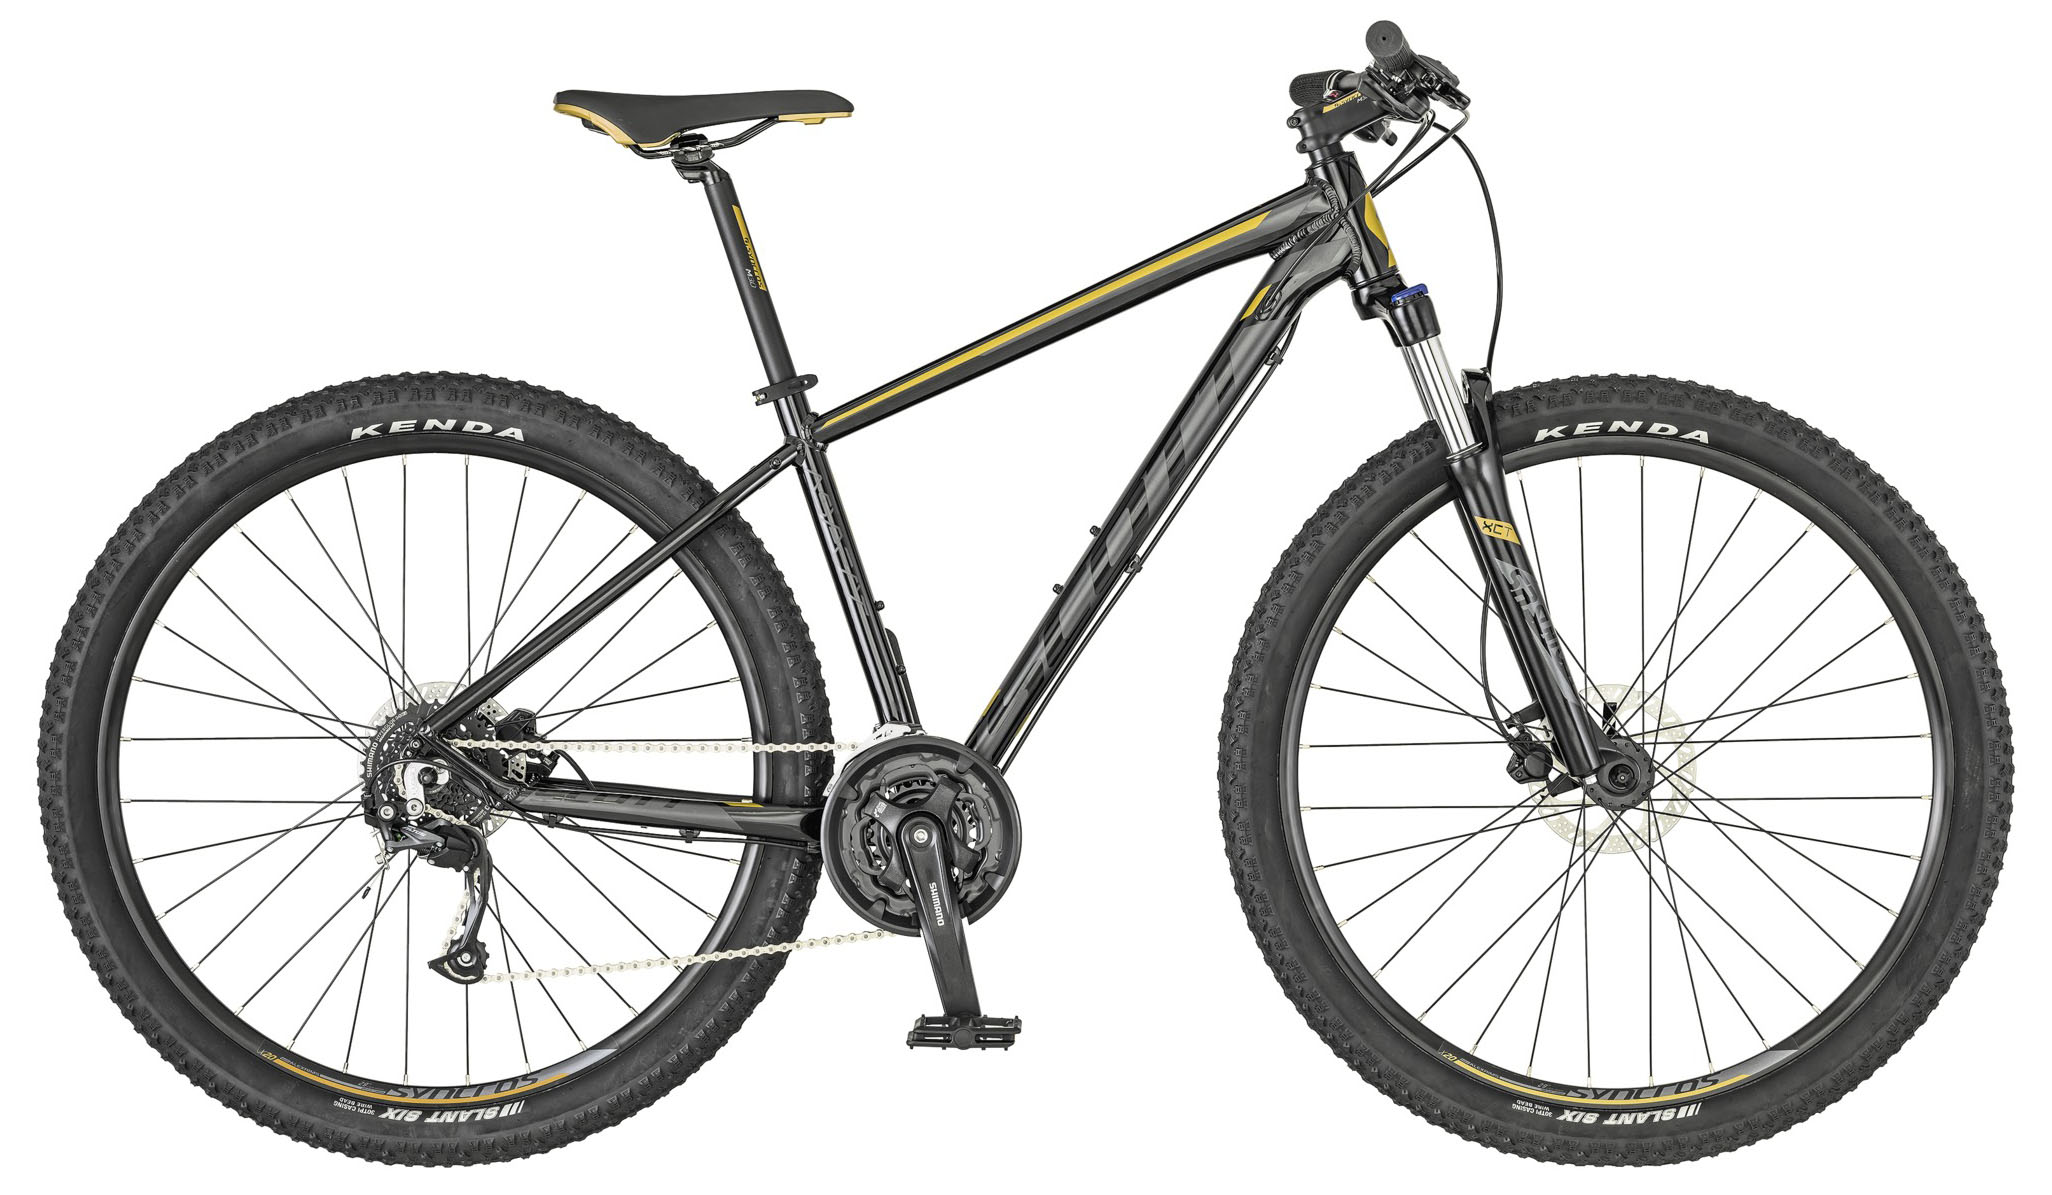  Отзывы о Горном велосипеде Scott Aspect 950 2022